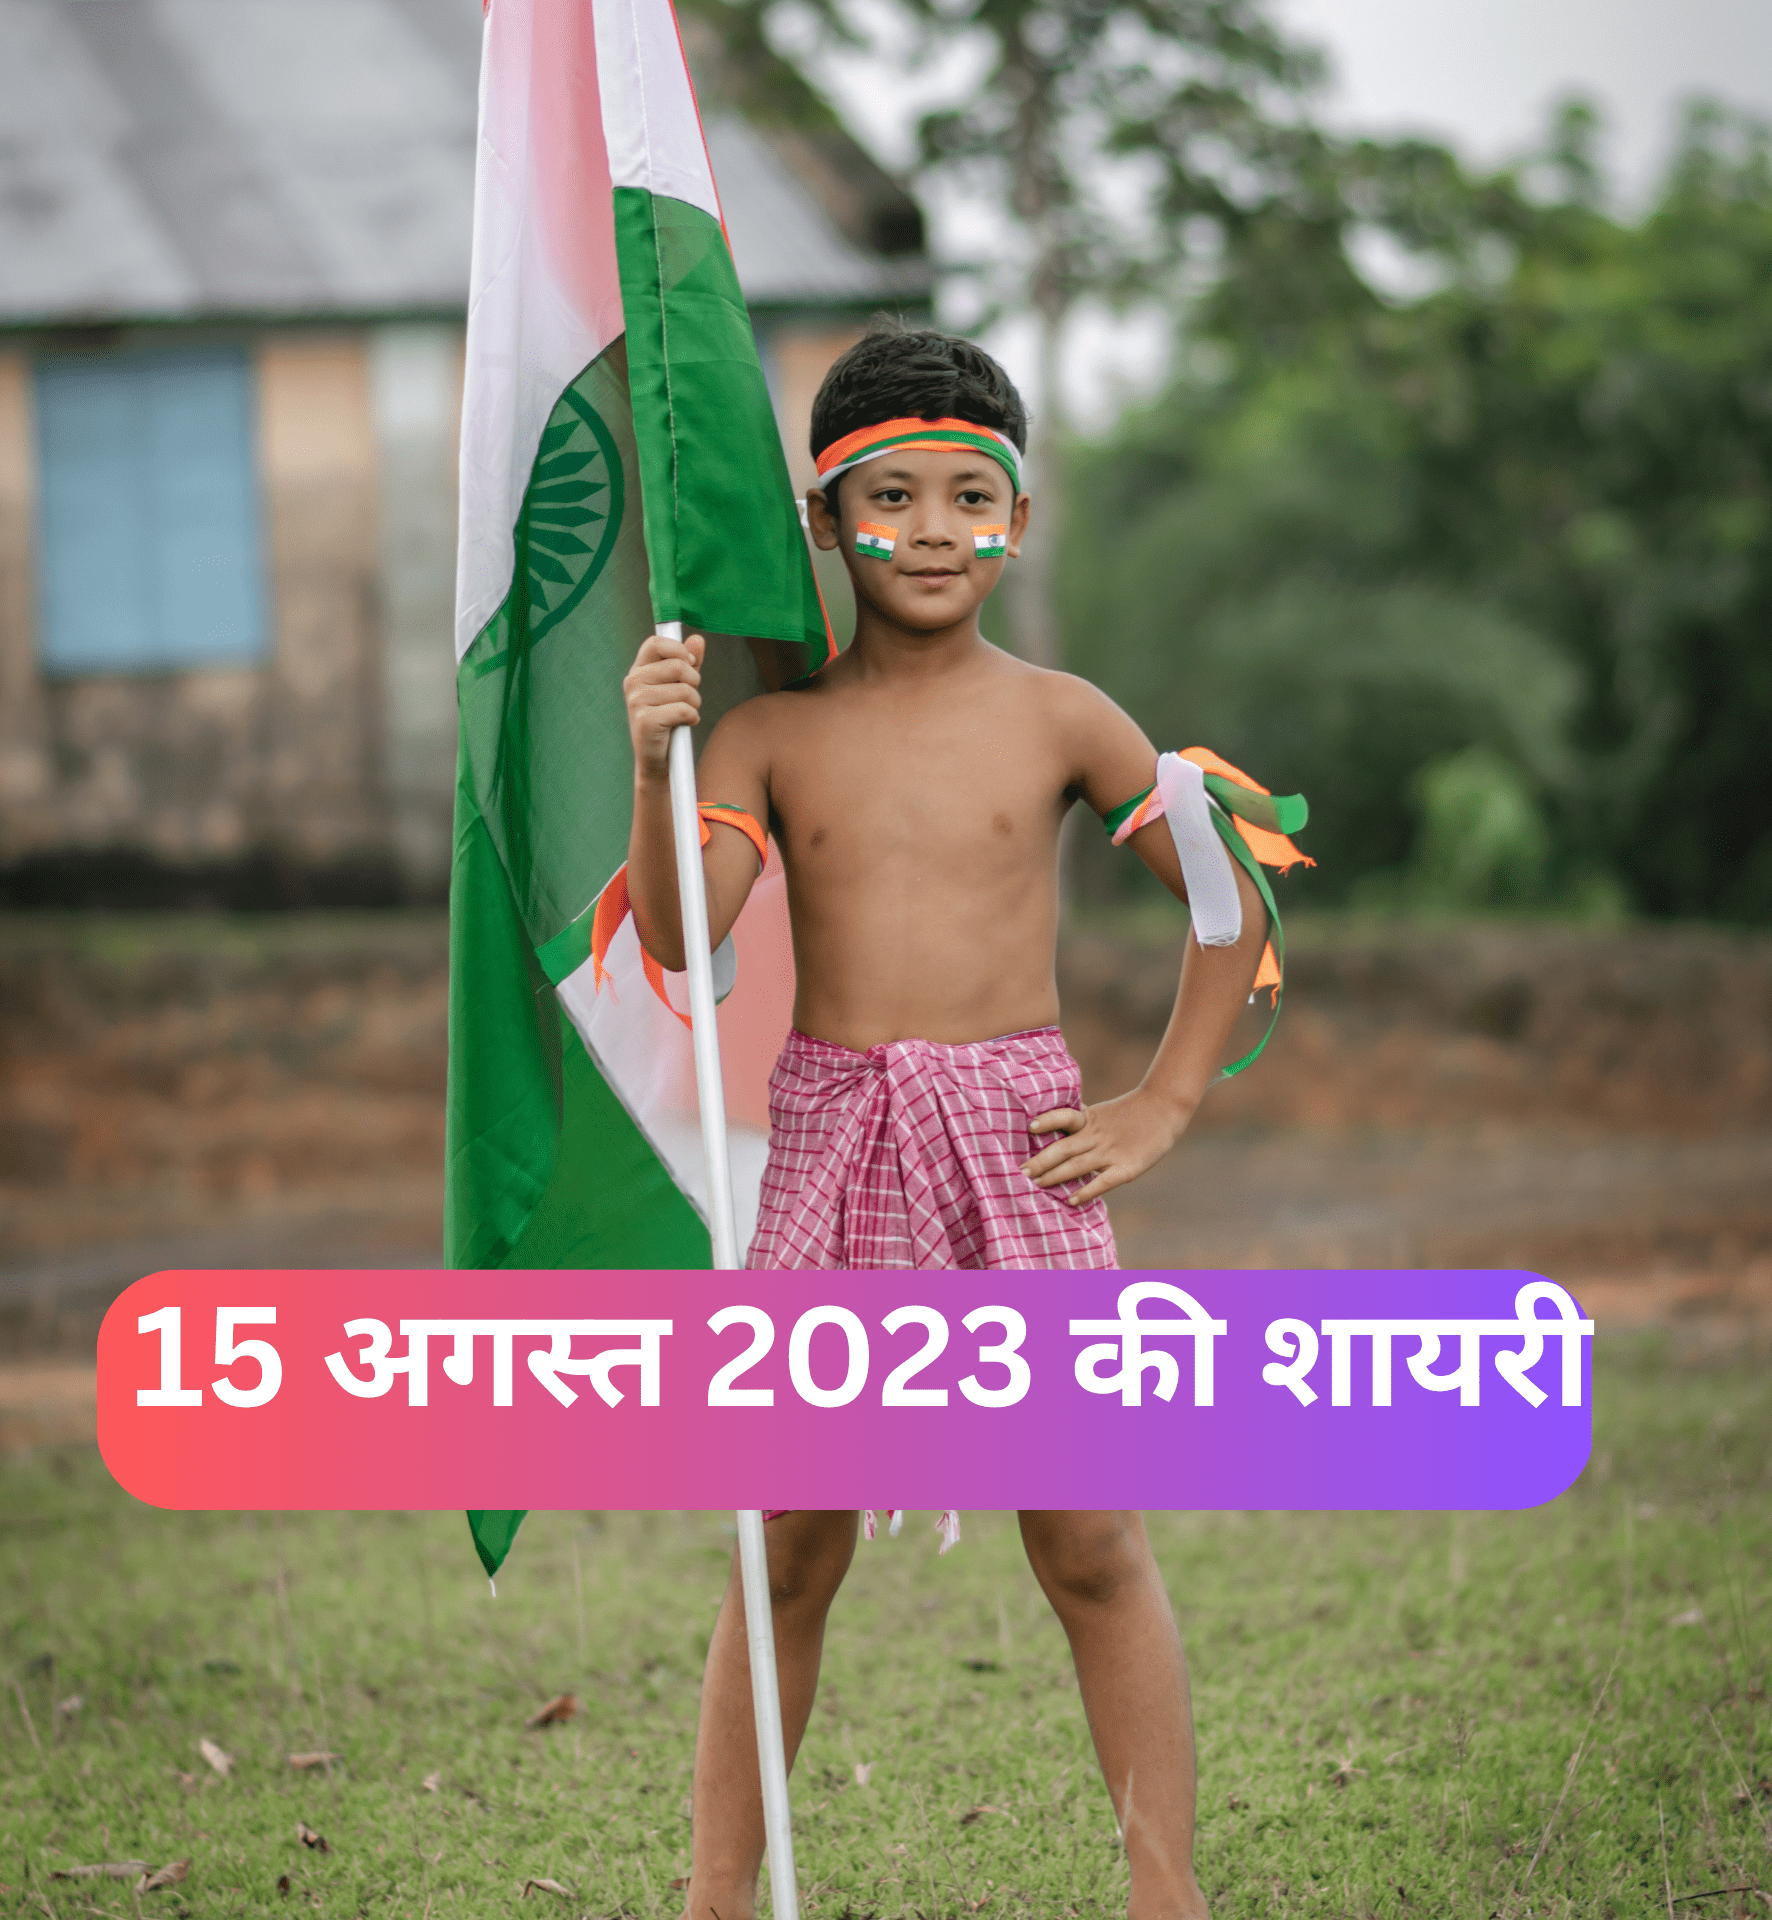 Top 10 – Independence day shayari in hindi